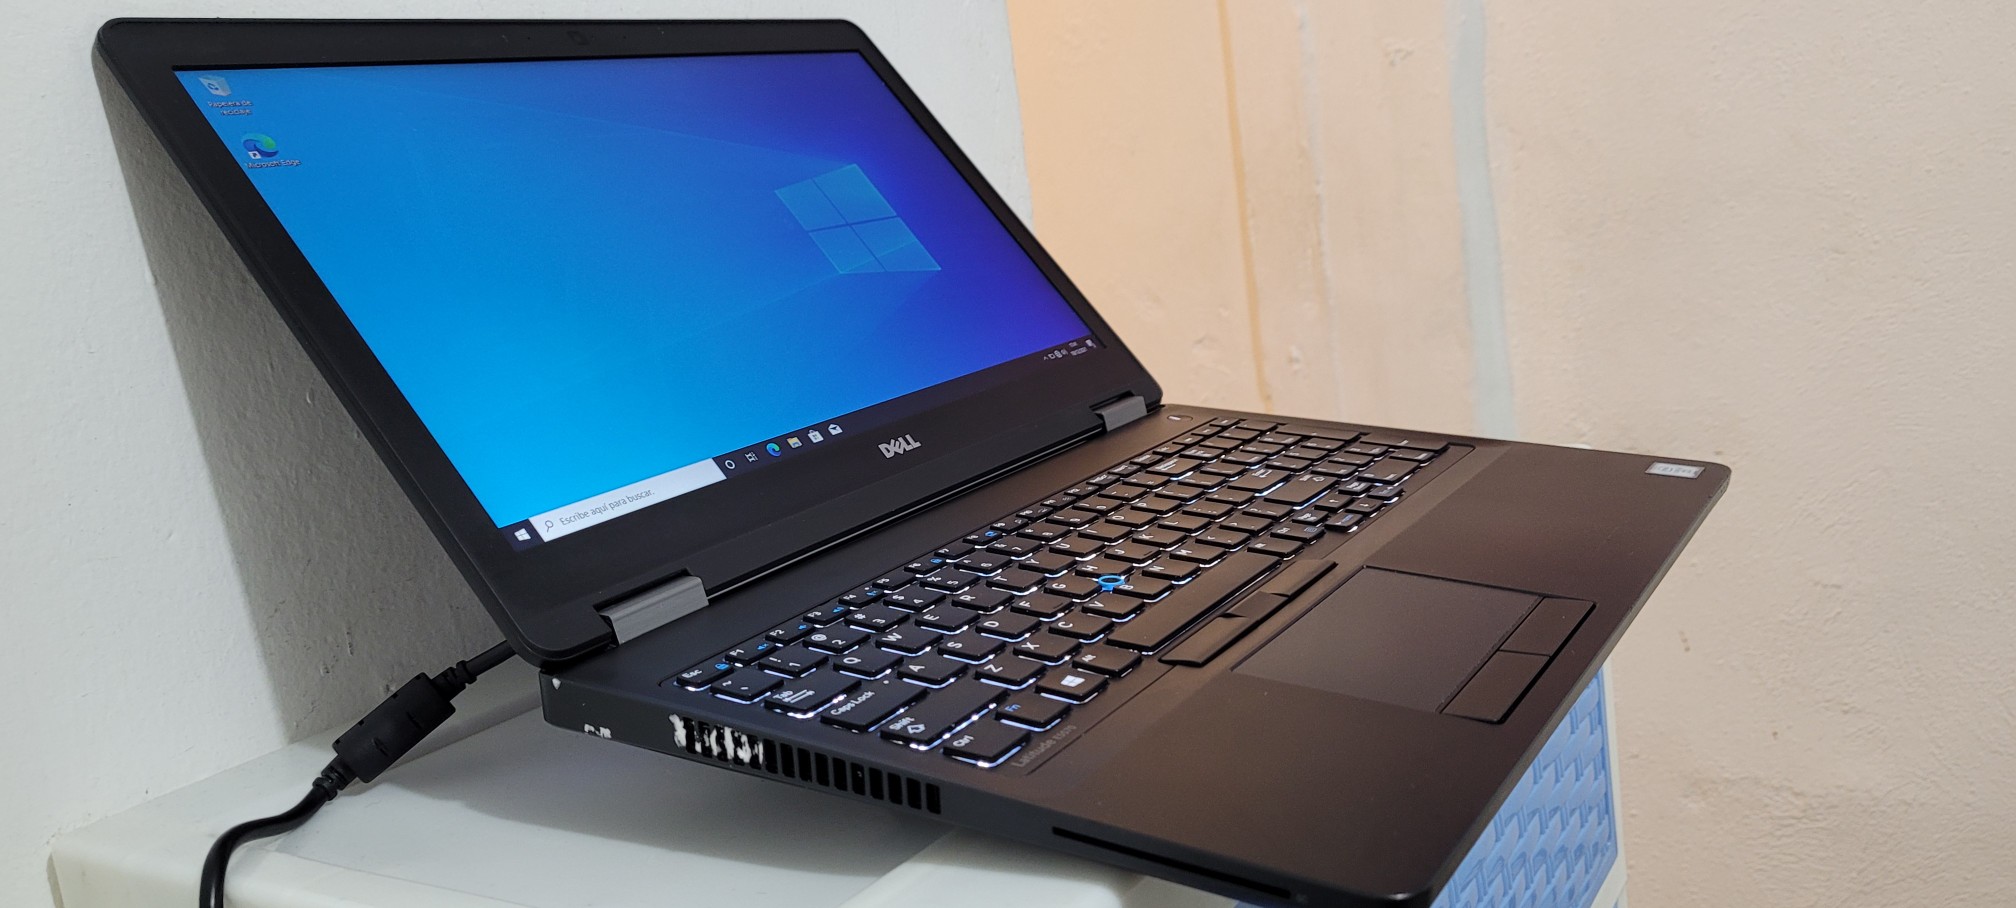 computadoras y laptops - Dell 5590 17 Pulg Core i5 8va Gen Ram 16gb Disco 512gb SSD Solido Video 8gb 1